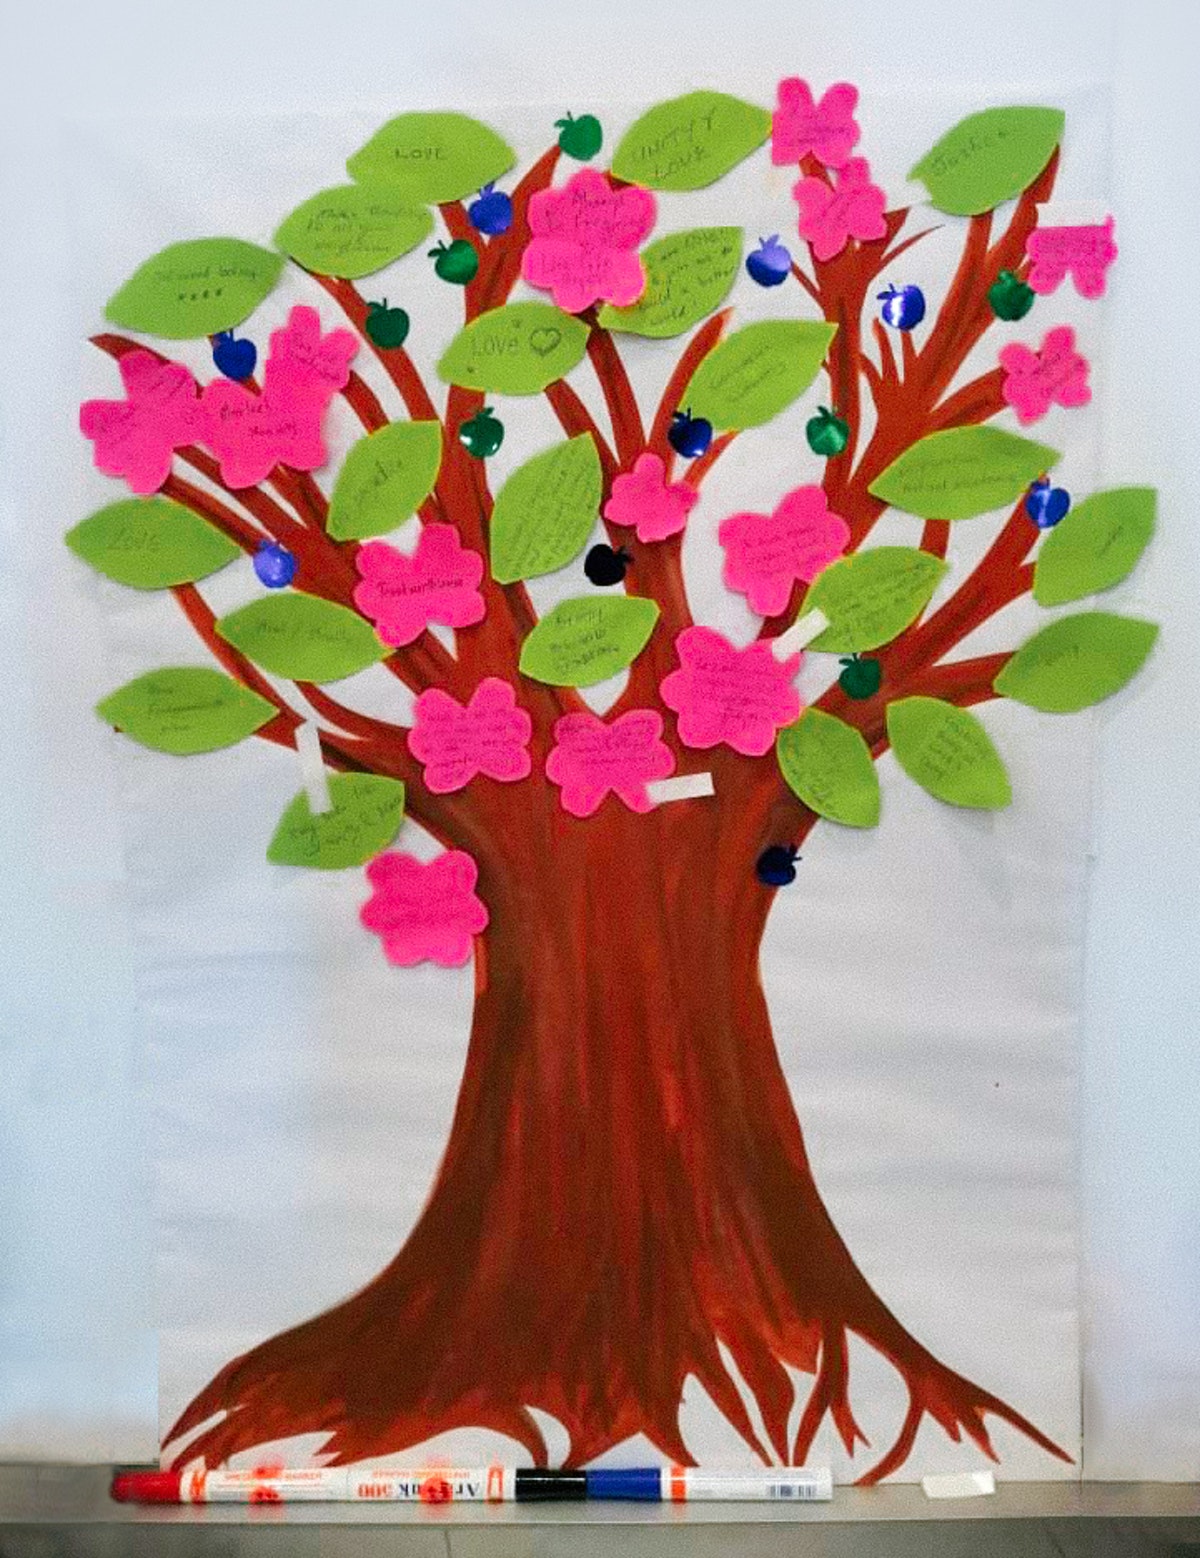 Lors d’un rassemblement en Malaisie, une œuvre d’art collaborative a été créée en utilisant un arbre comme symbole de la diversité et de l’abondance des qualités spirituelles que Dieu a données à l’humanité.